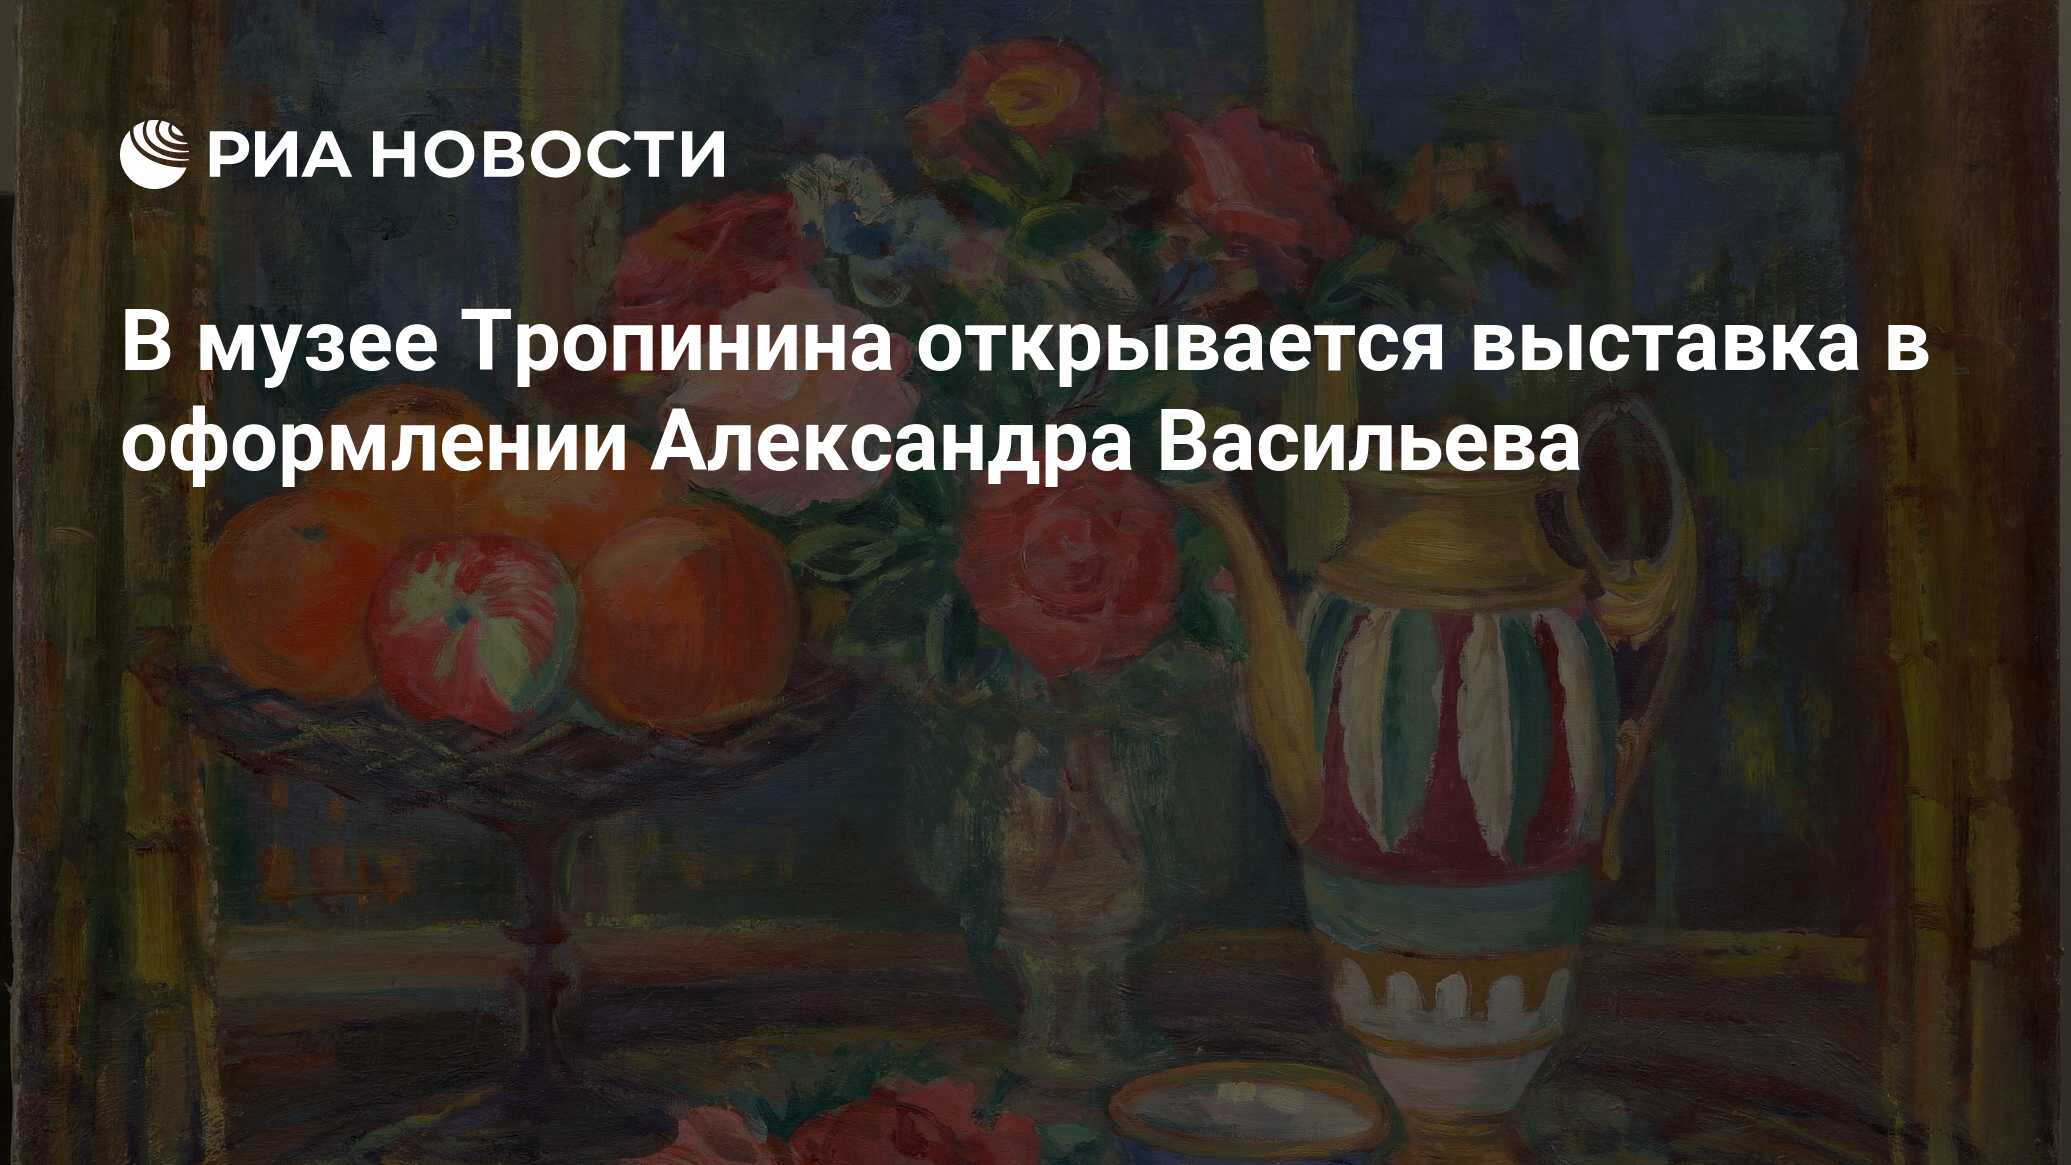 В музее Тропинина открывается выставка в оформлении Александра Васильева -  РИА Новости, 02.12.2022